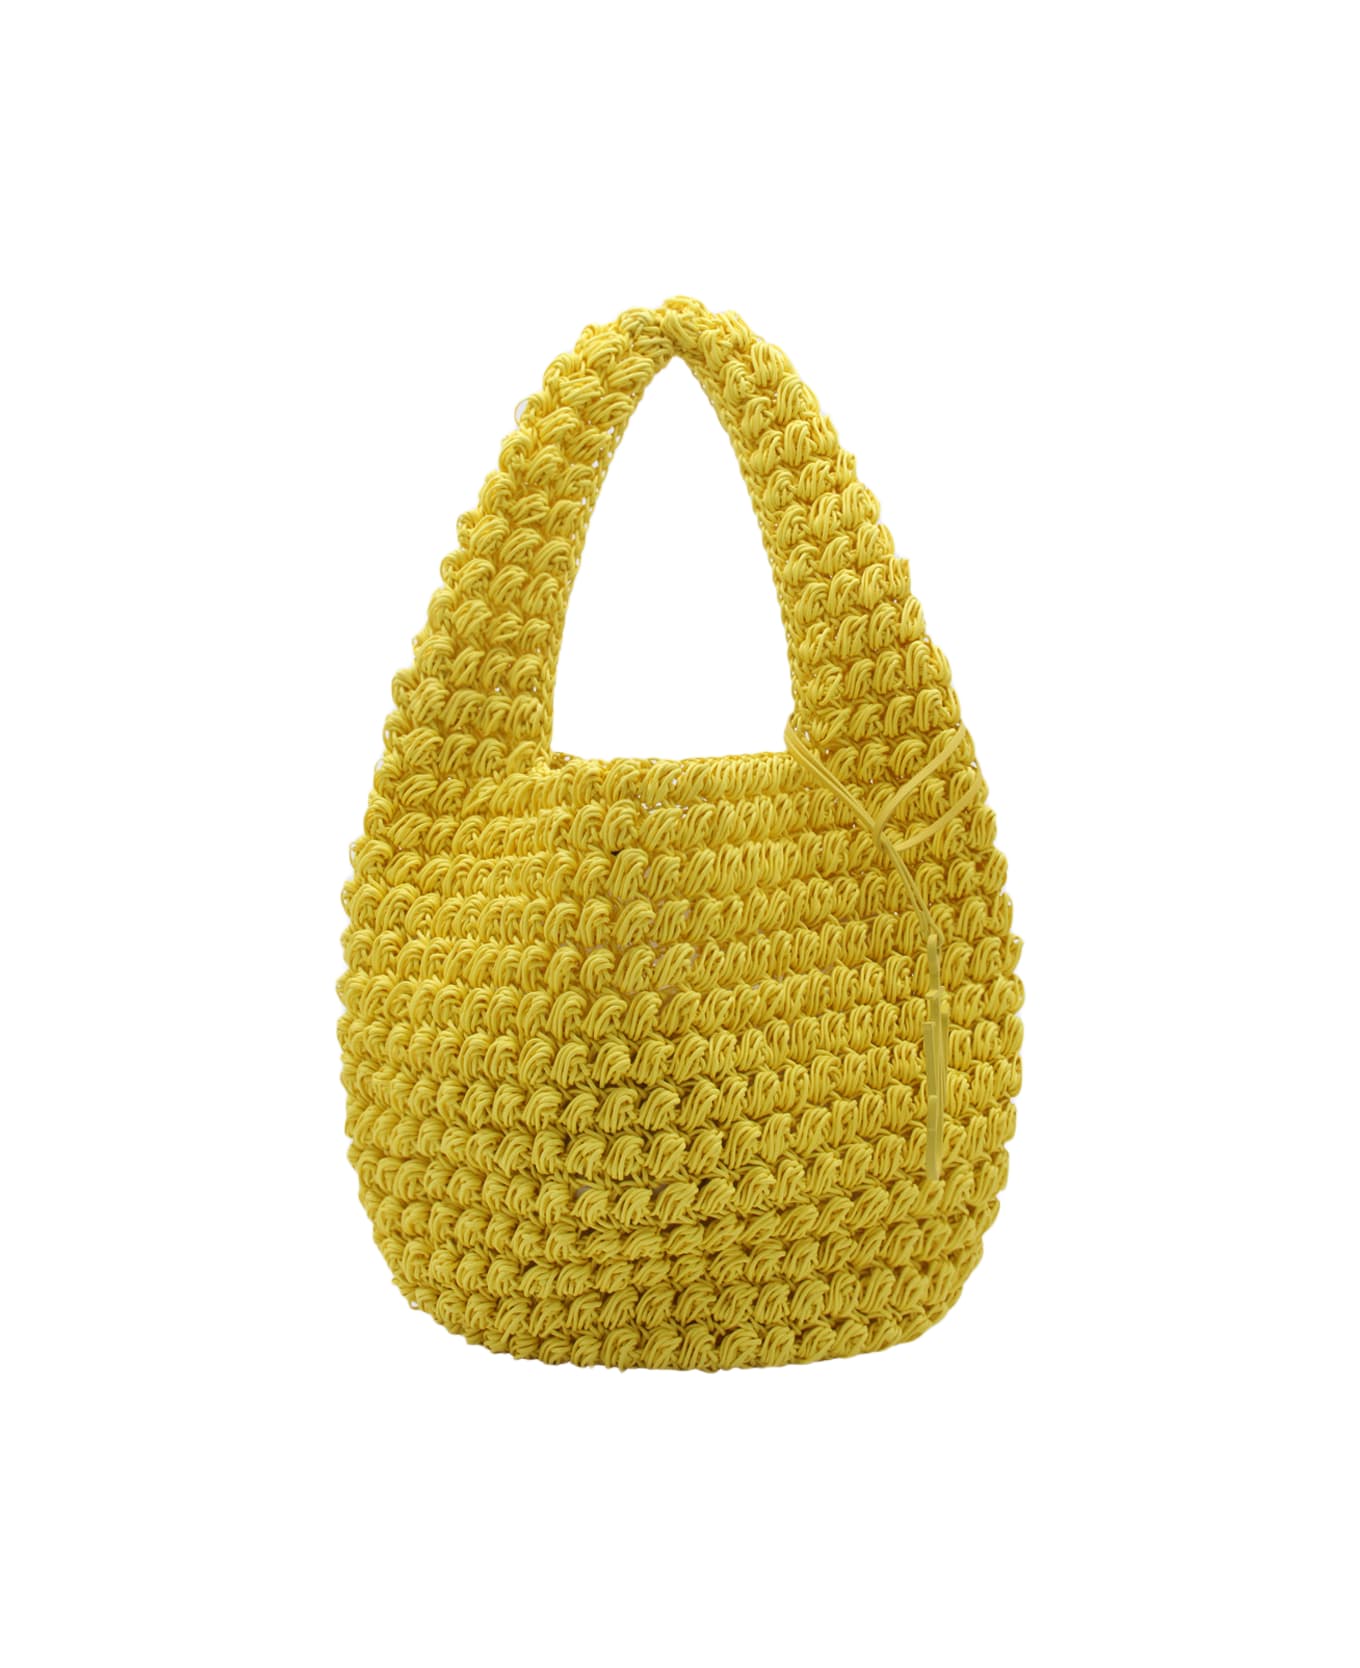 J.W. Anderson Yellow Cotton Popcorn Basket Tote Bag - Yellow